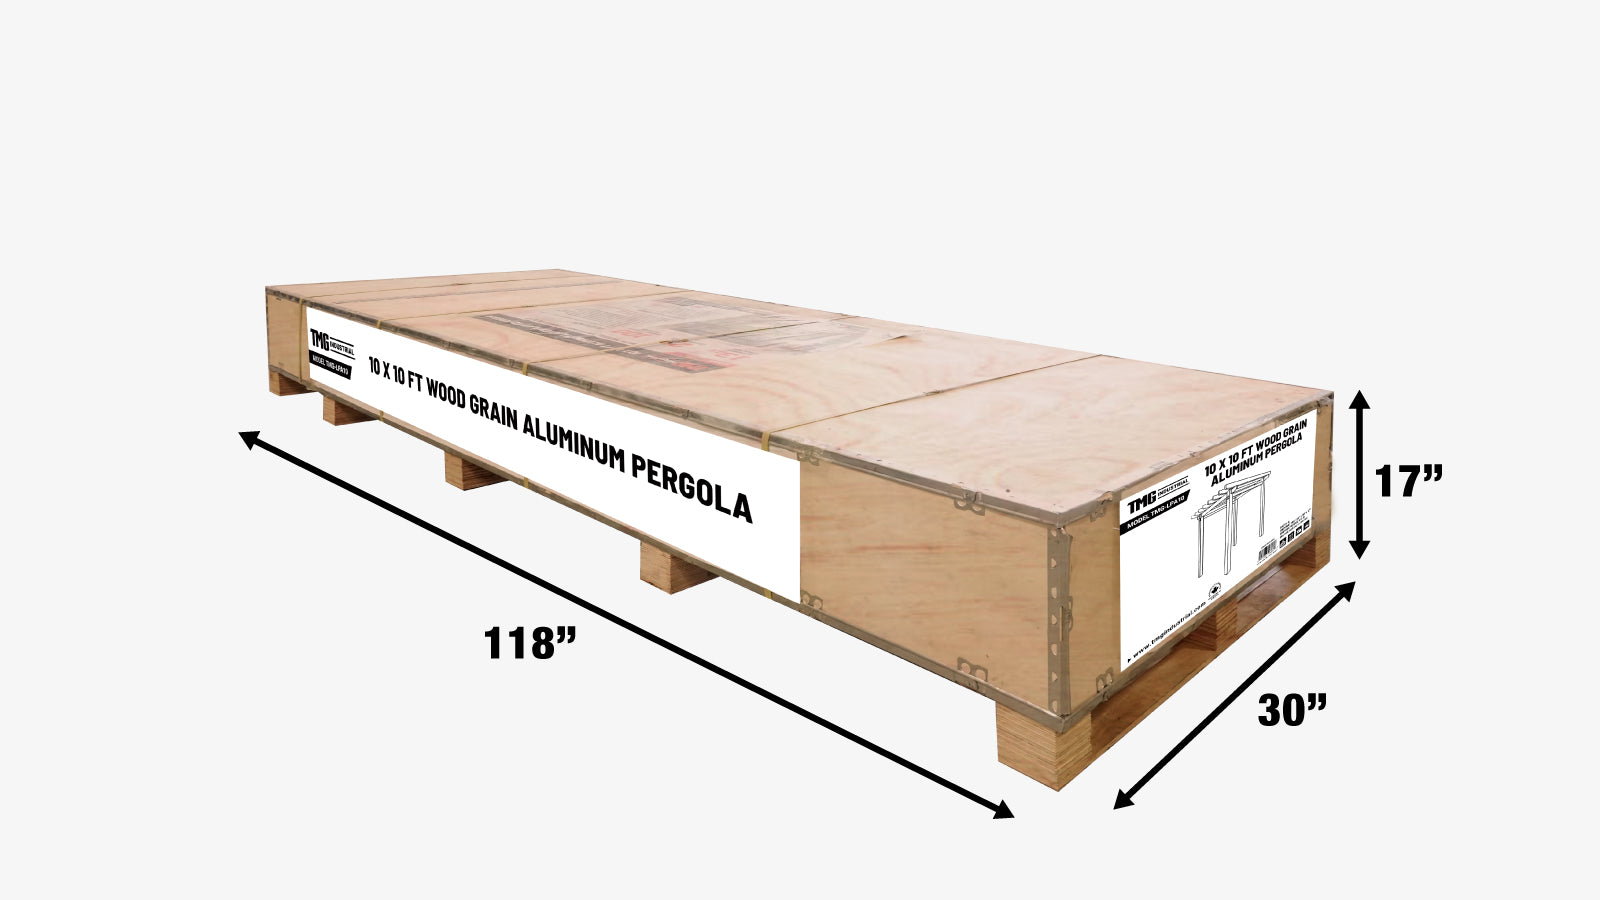 TMG LIVING 10' x 10' Wood Grain Aluminum Pergola, TMG-LPA10-shipping-info-image